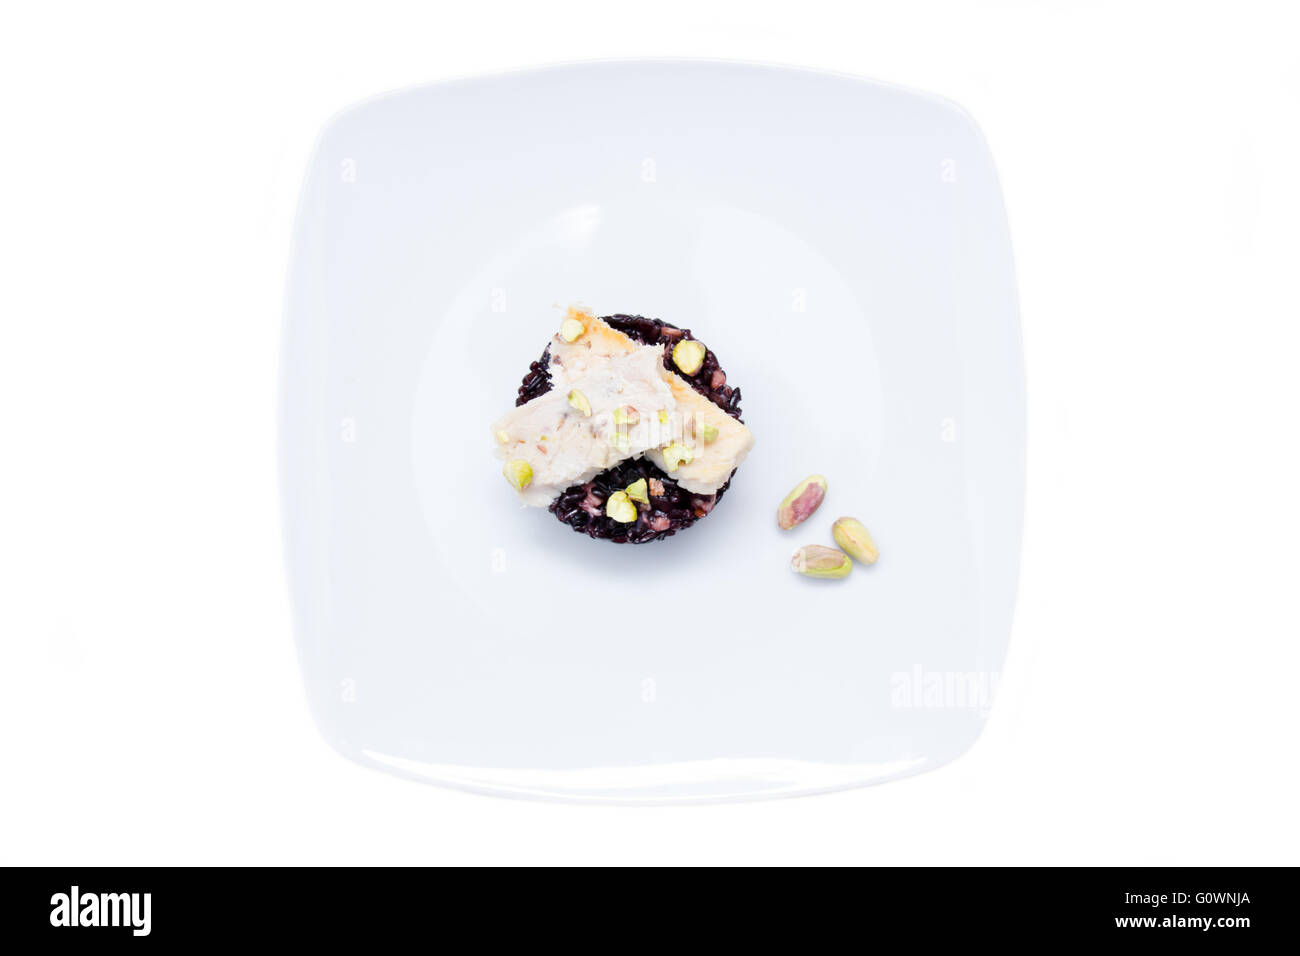 Il riso nero con pesce e pistacchi su uno sfondo bianco visto da sopra Foto Stock